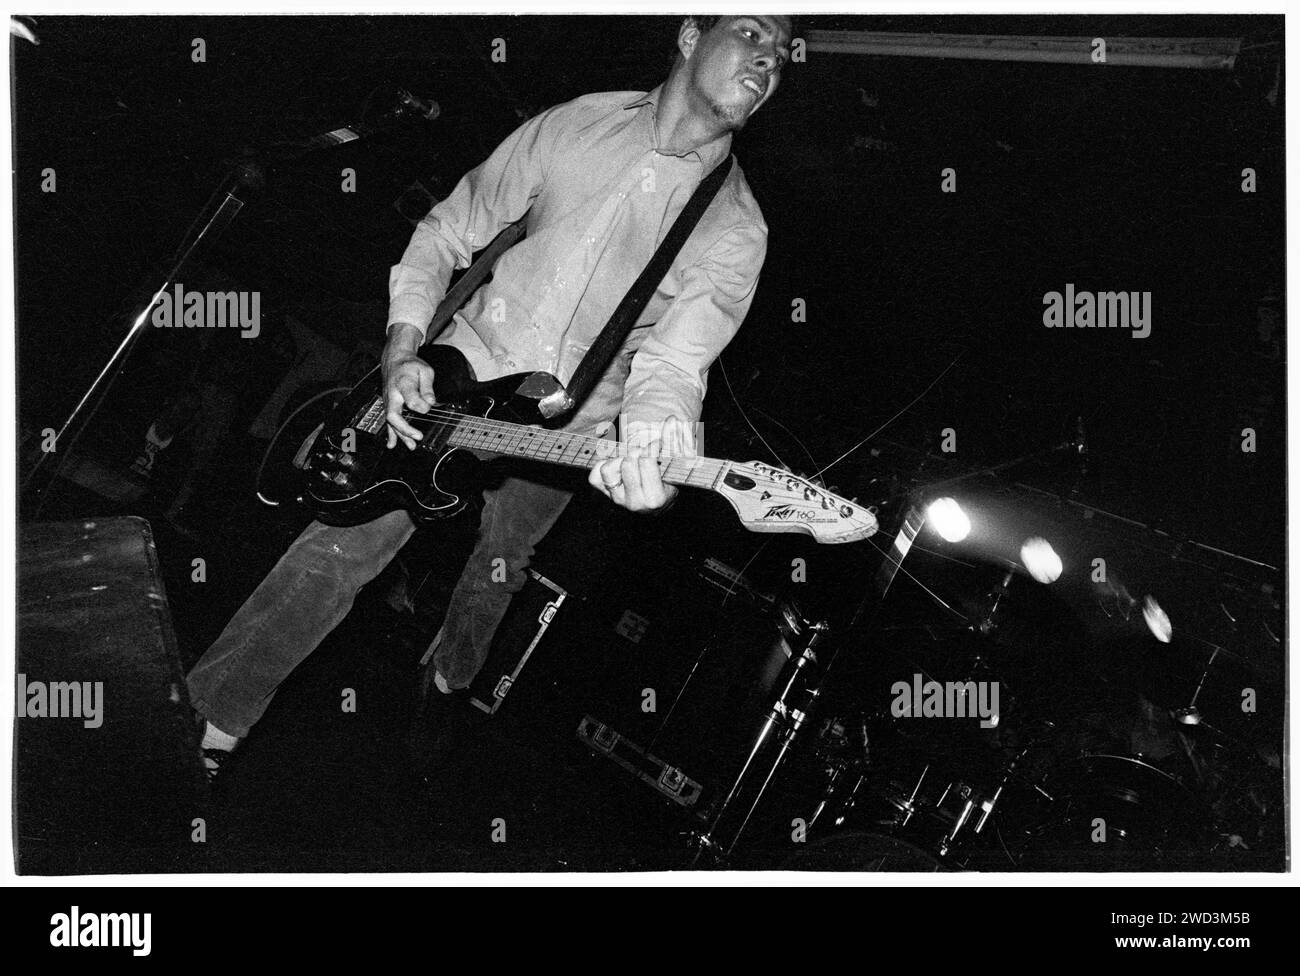 Kirk Branstetter von Trumans Water spielte live im Bristol Bierkeller Room am 20. September 1993. Foto: Rob Watkins. BAND INFO: Trumans Water, eine experimentelle Indie-Rock-Band, die 1991 in San Diego gegründet wurde, schuf einen unverwechselbaren Sound, der Geräusche, Psychedelia und Punk miteinander verbindet. Mit unvorhersehbaren Strukturen und glühender Energie stellten sie Konventionen in Frage und hinterließen ein unauslöschliches Zeichen in der Underground-Musikszene. Stockfoto